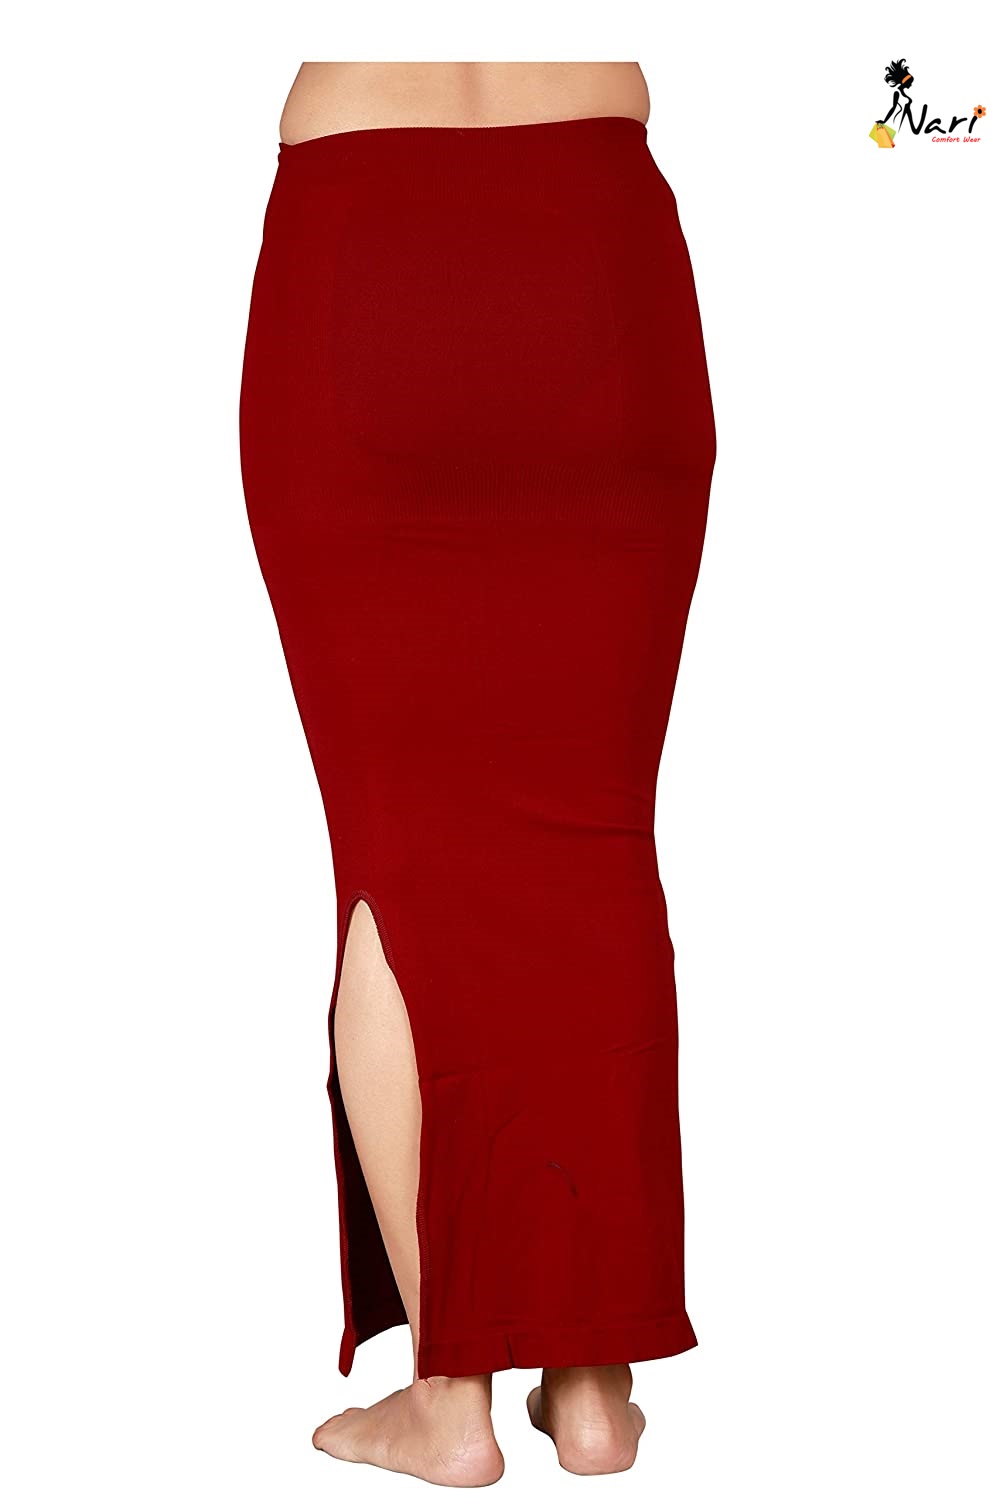 Saree Shapewear Petticoat for Women 4008 Saree Shaper Maroon – Nari – Nari  Comfort Wear